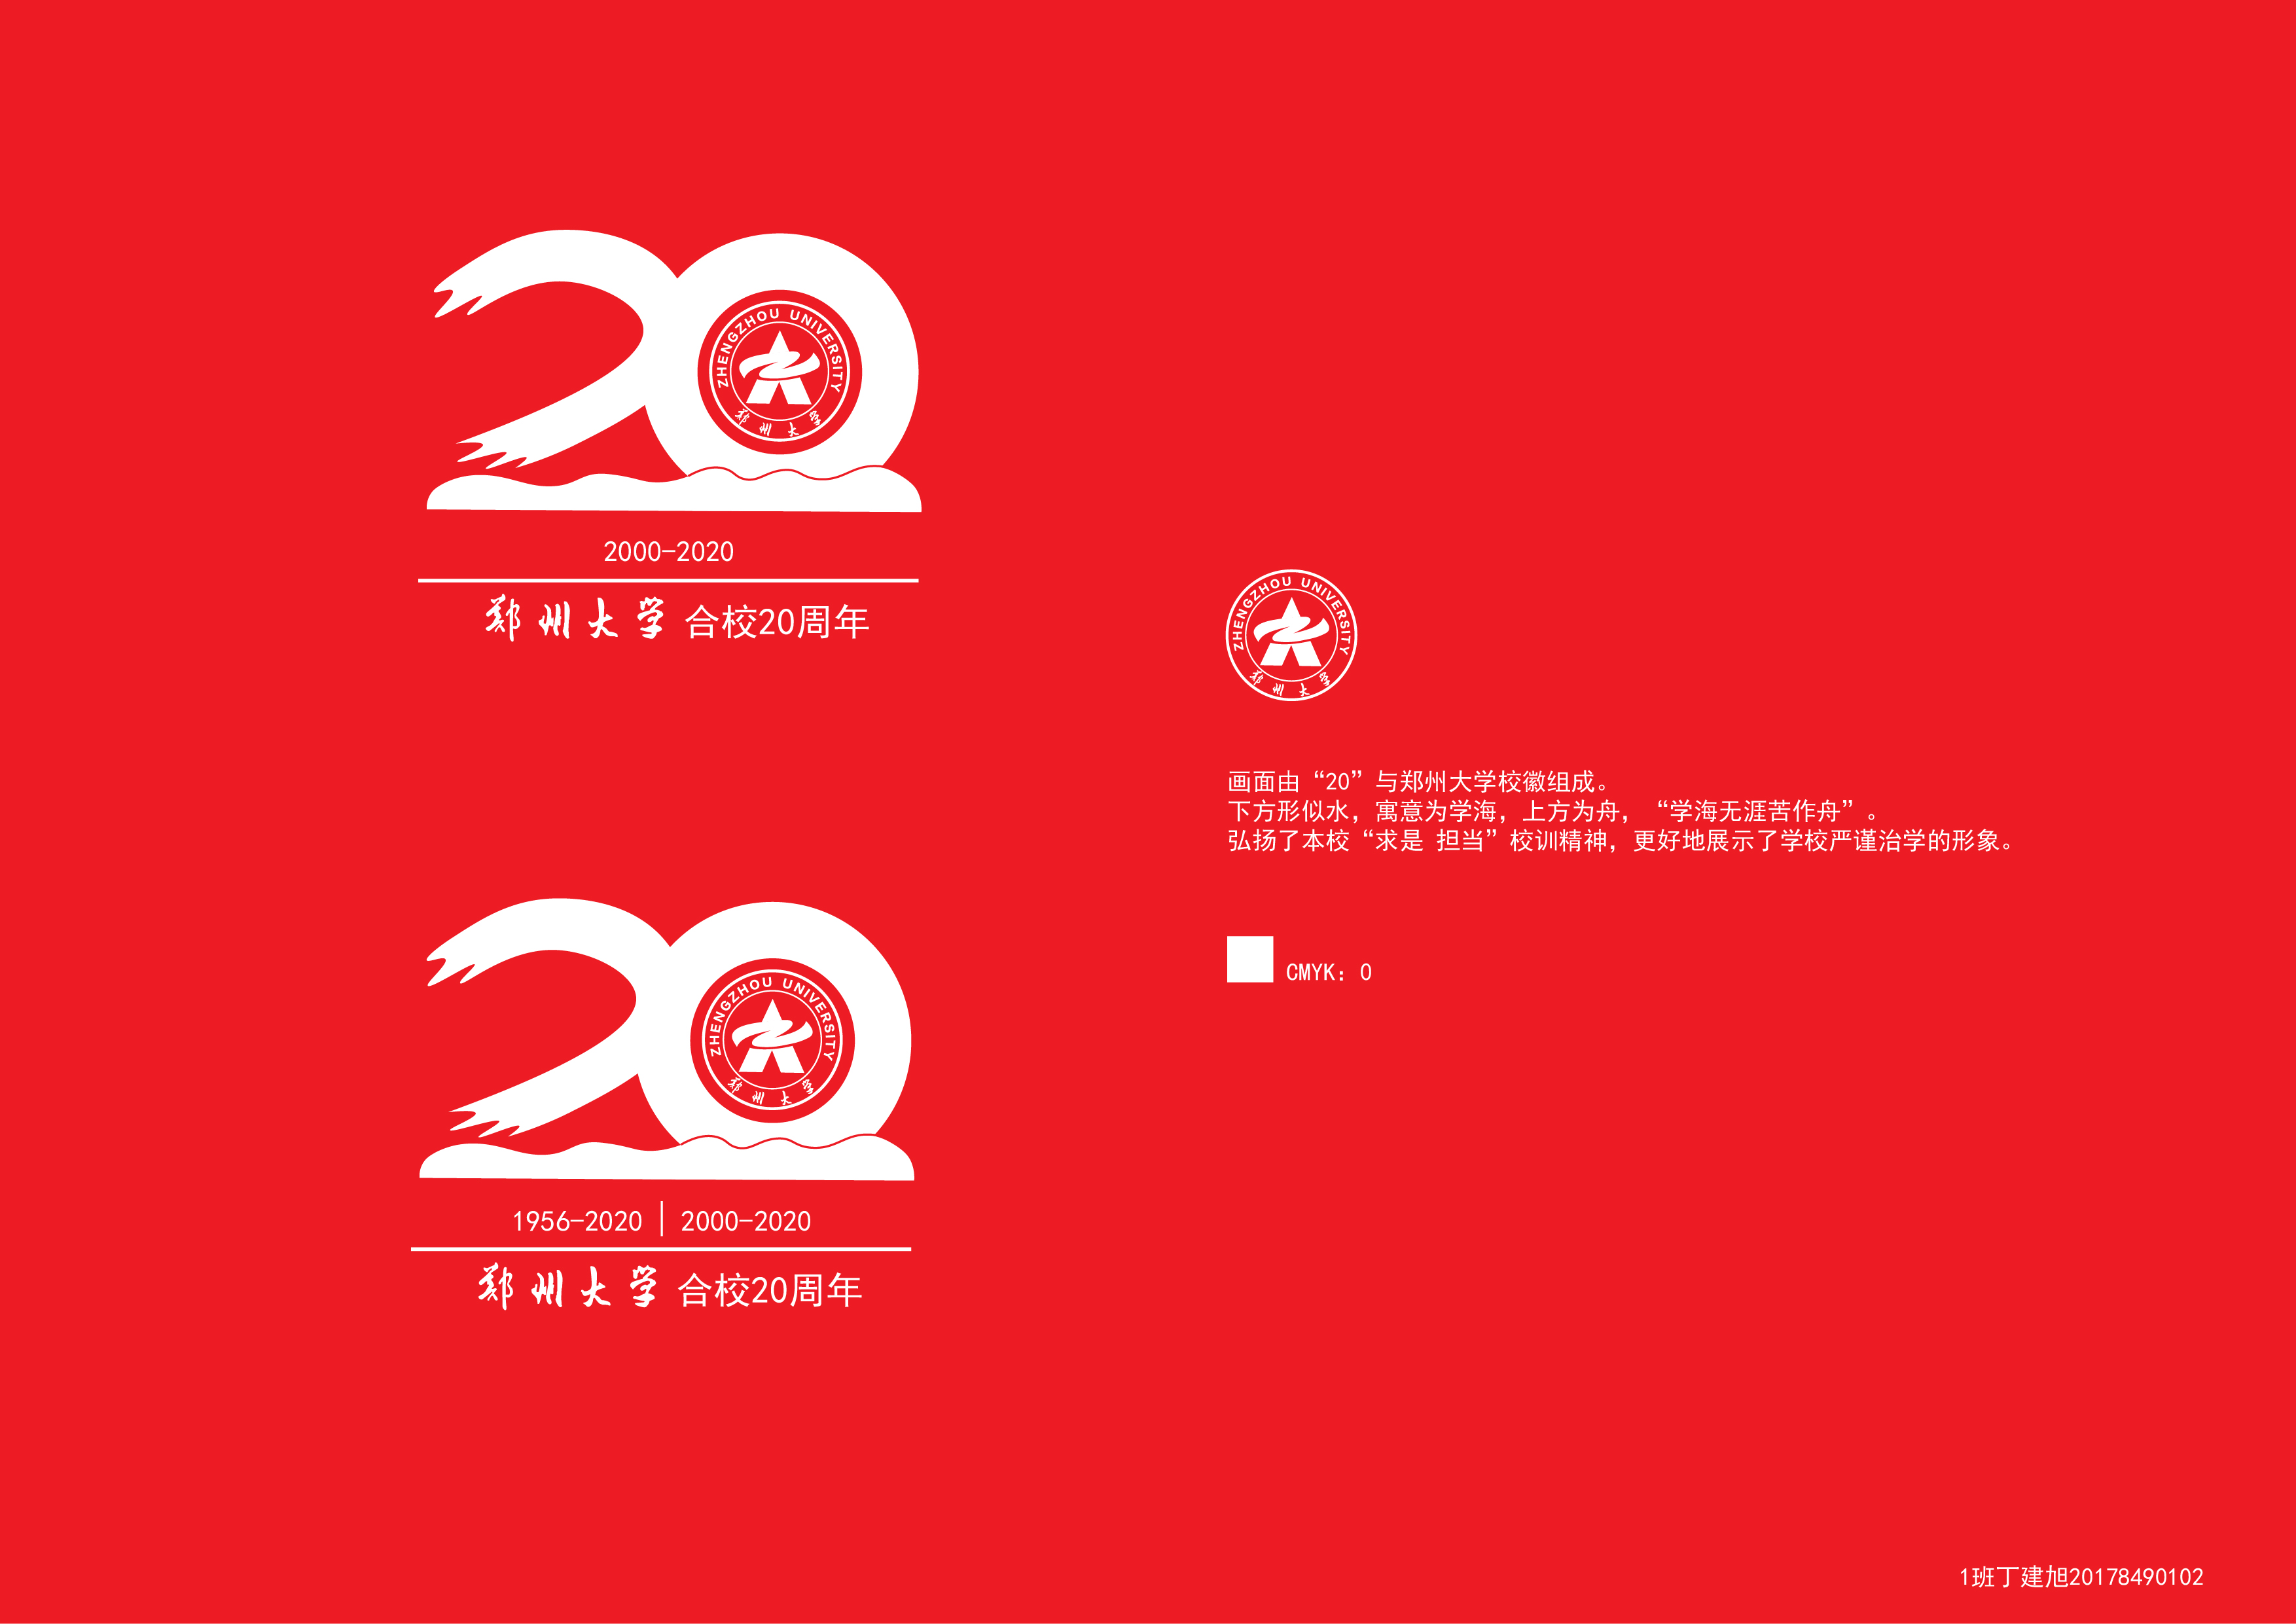 我院视觉传达设计专业学生在郑州大学合校20周年校庆标识logo设计方案